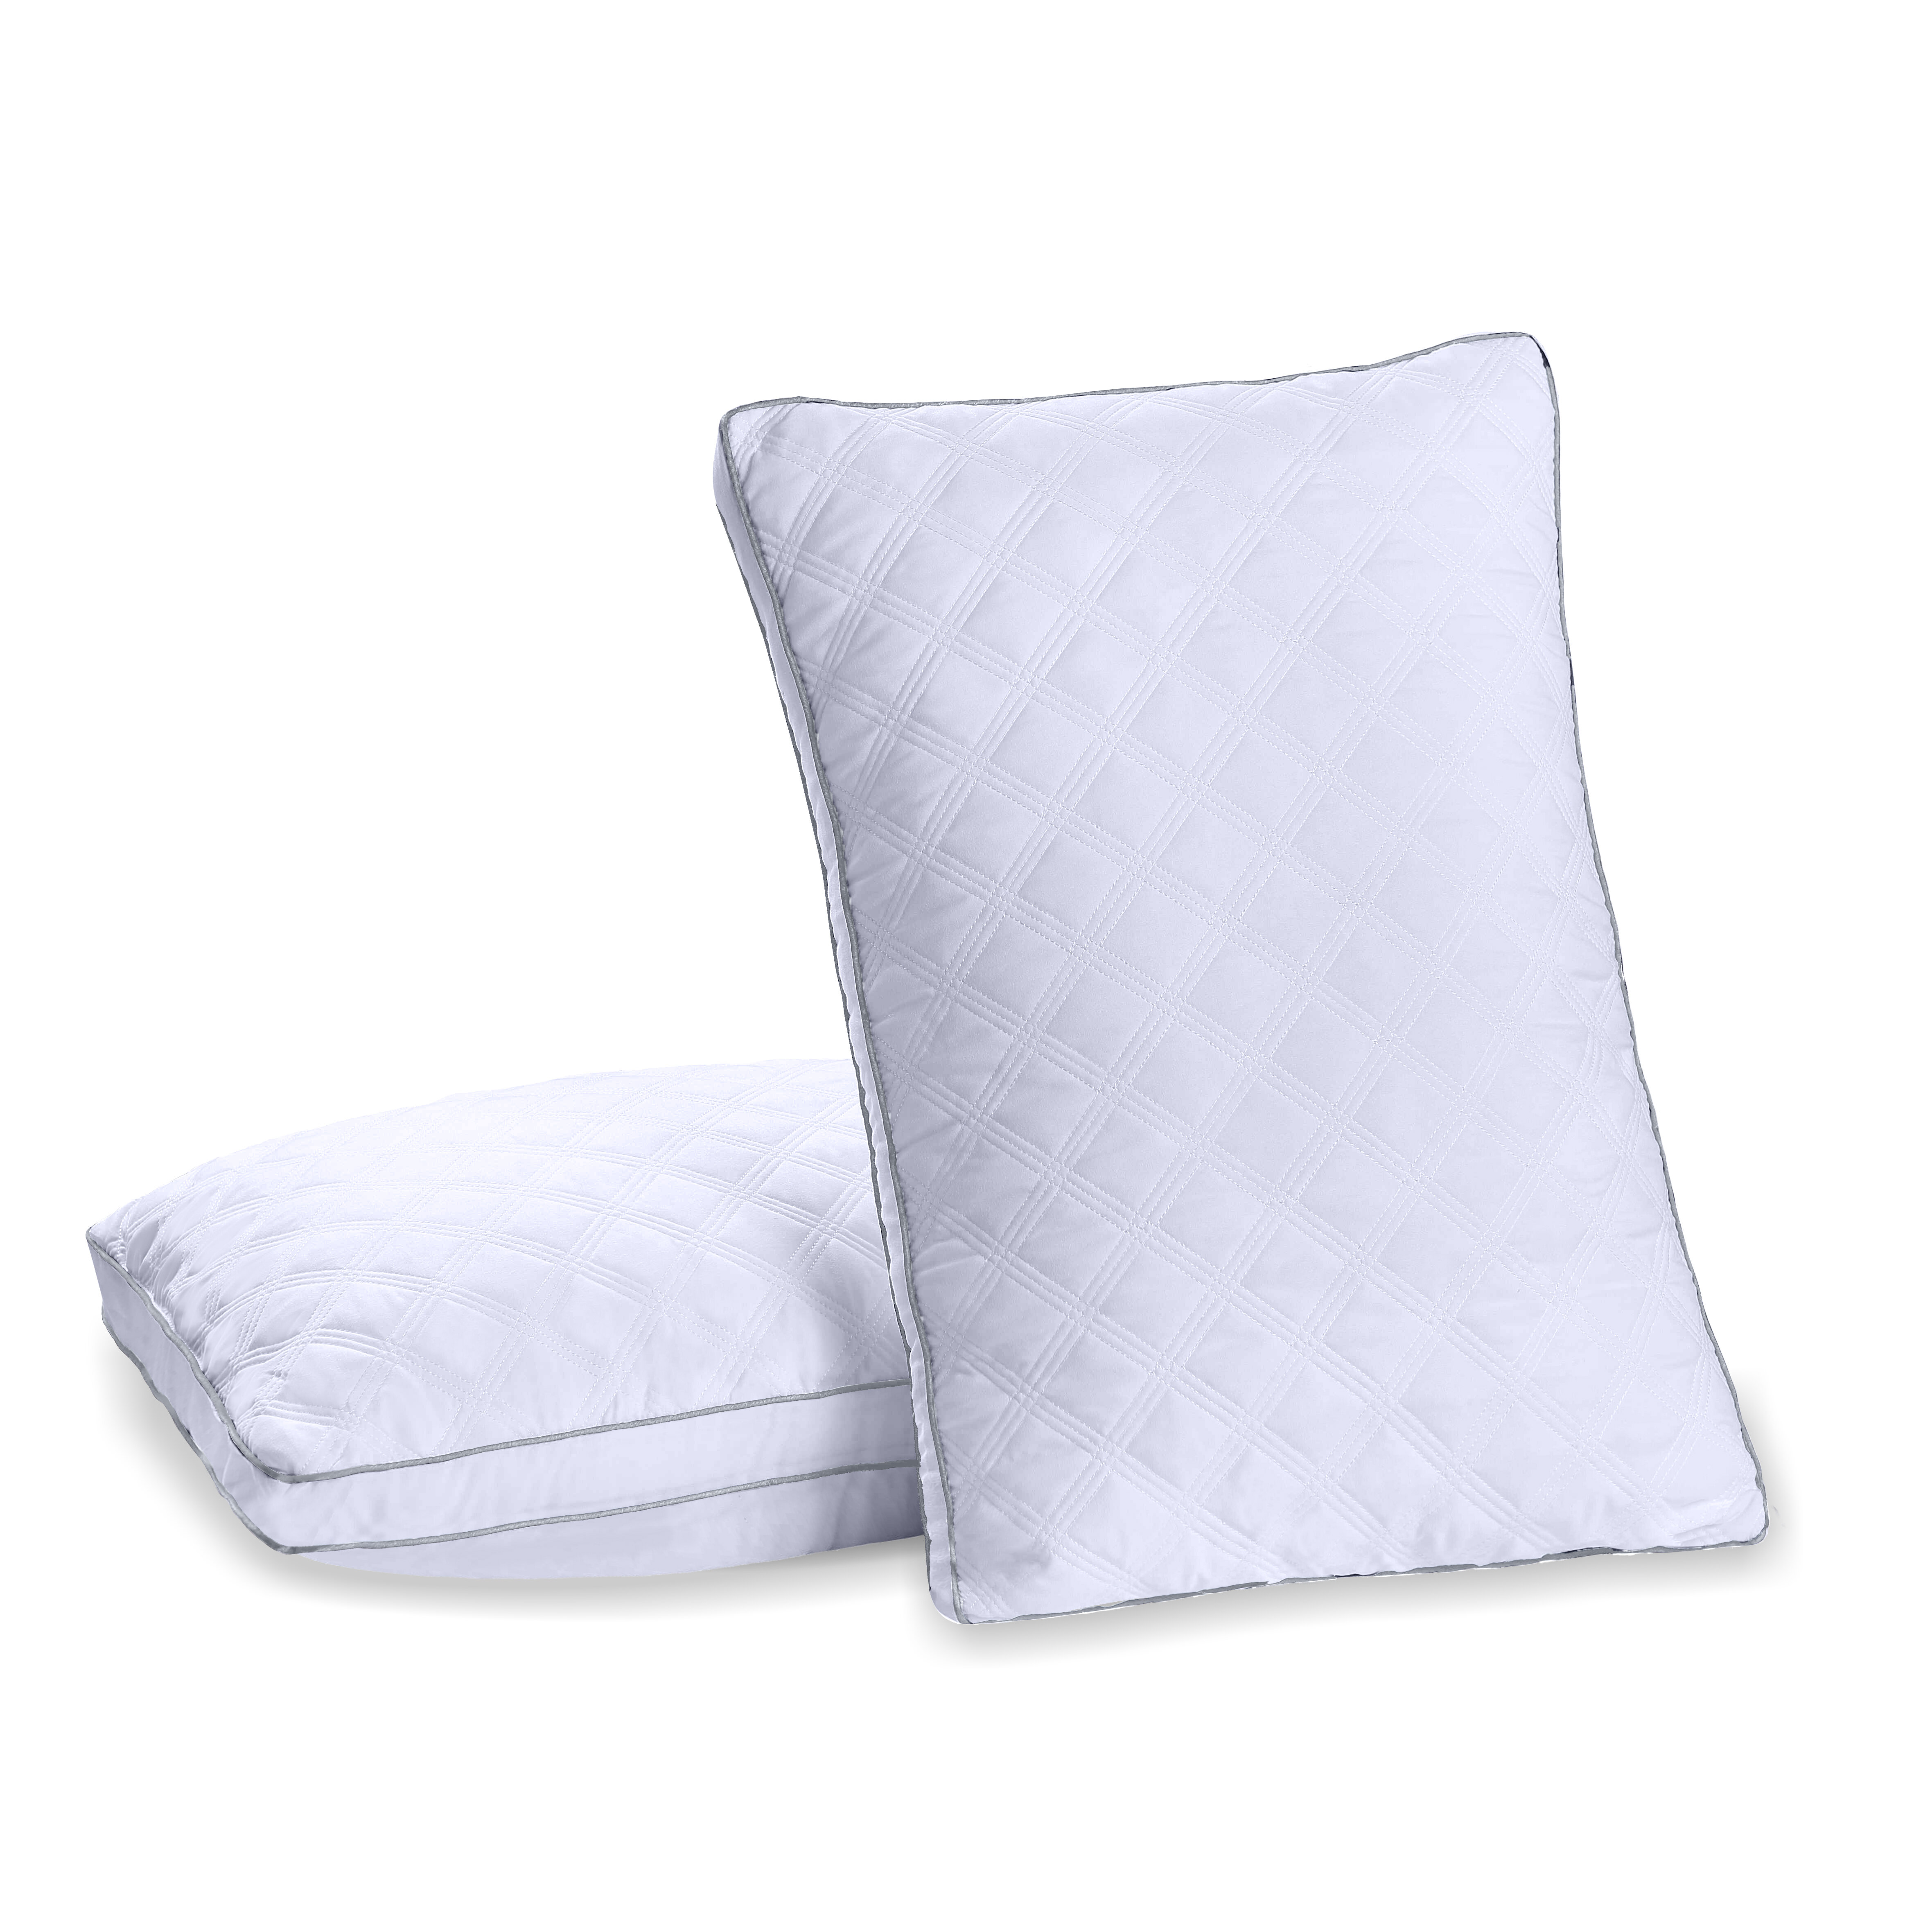 https://assets.wfcdn.com/im/76749238/compr-r85/1394/139420683/huggins-down-alternative-plush-cooling-pillow.jpg